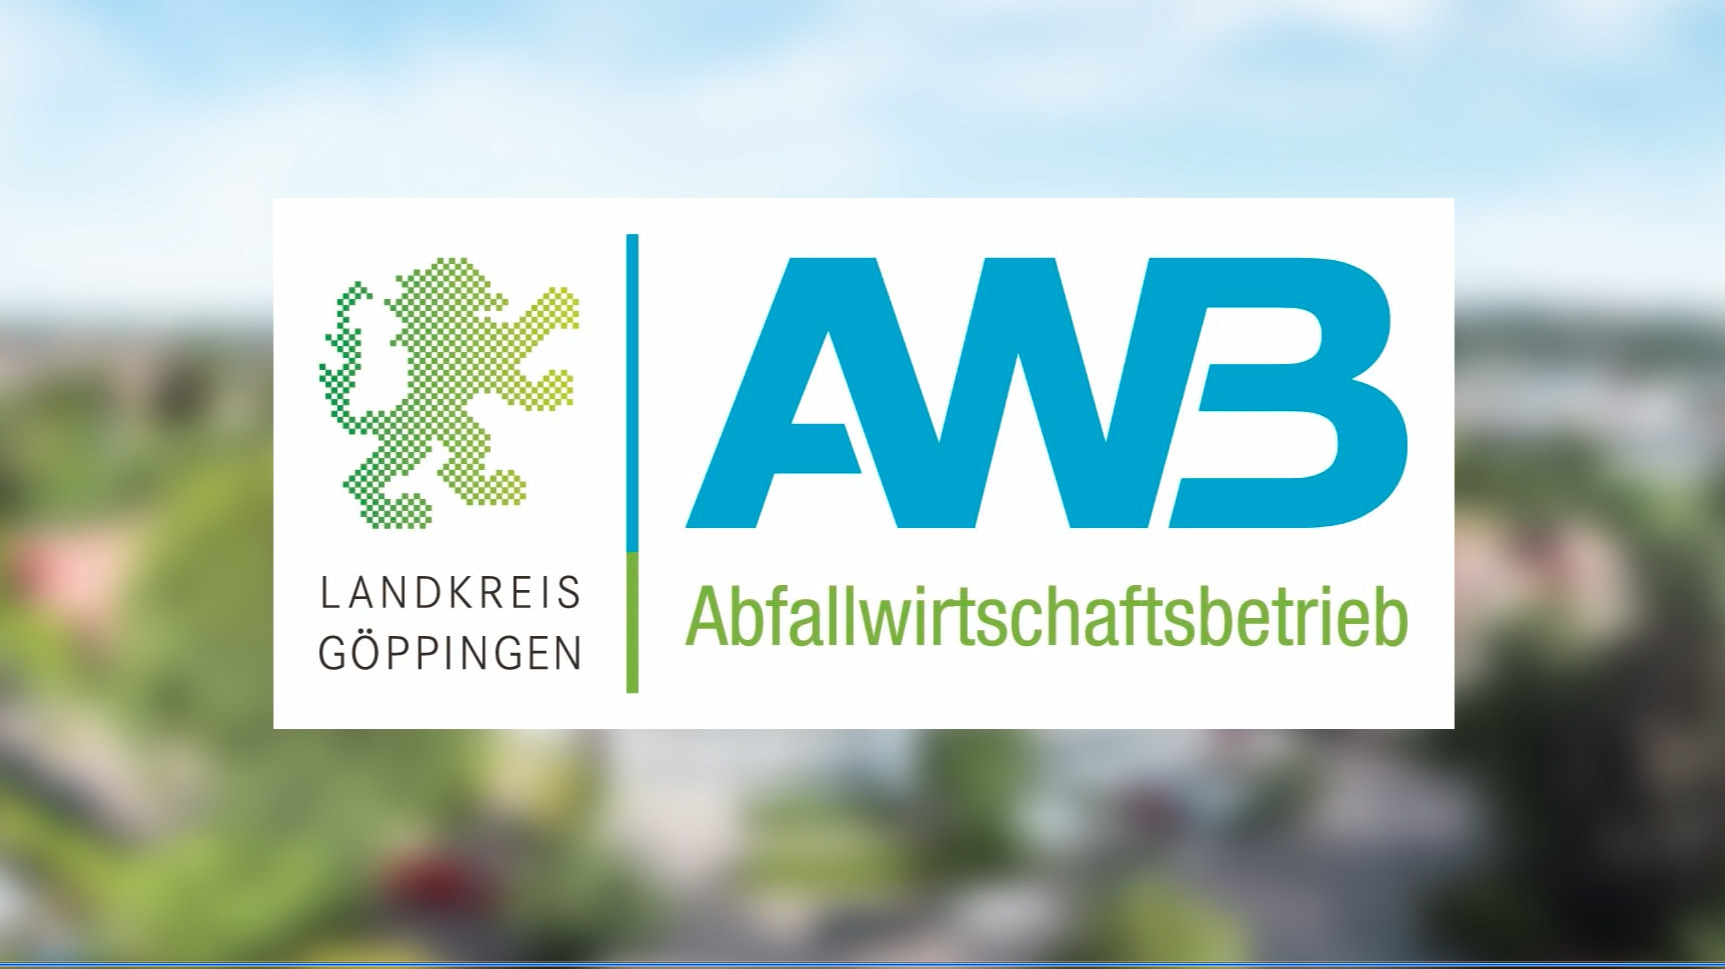 AWB-Logo vor verpixeltem Hintergrund